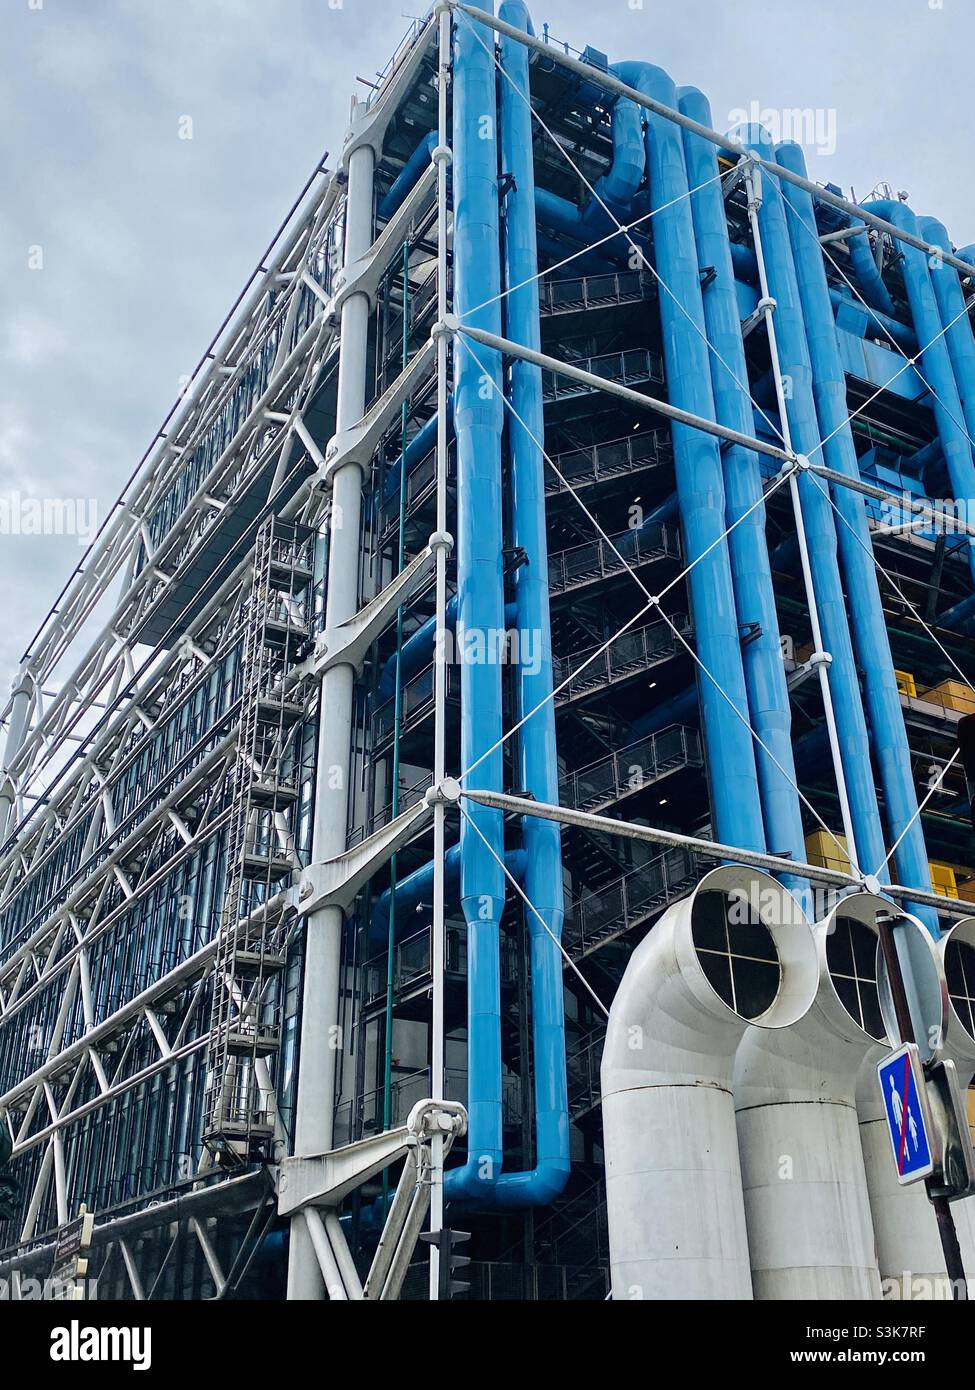 Le Centre Pompidou de Paris, une icône de l’architecture moderne présentant un design intérieur révolutionnaire, abrite le Musée National d’Arte moderne, l’IRCAM et la Bibliothèque publique de l’information Banque D'Images